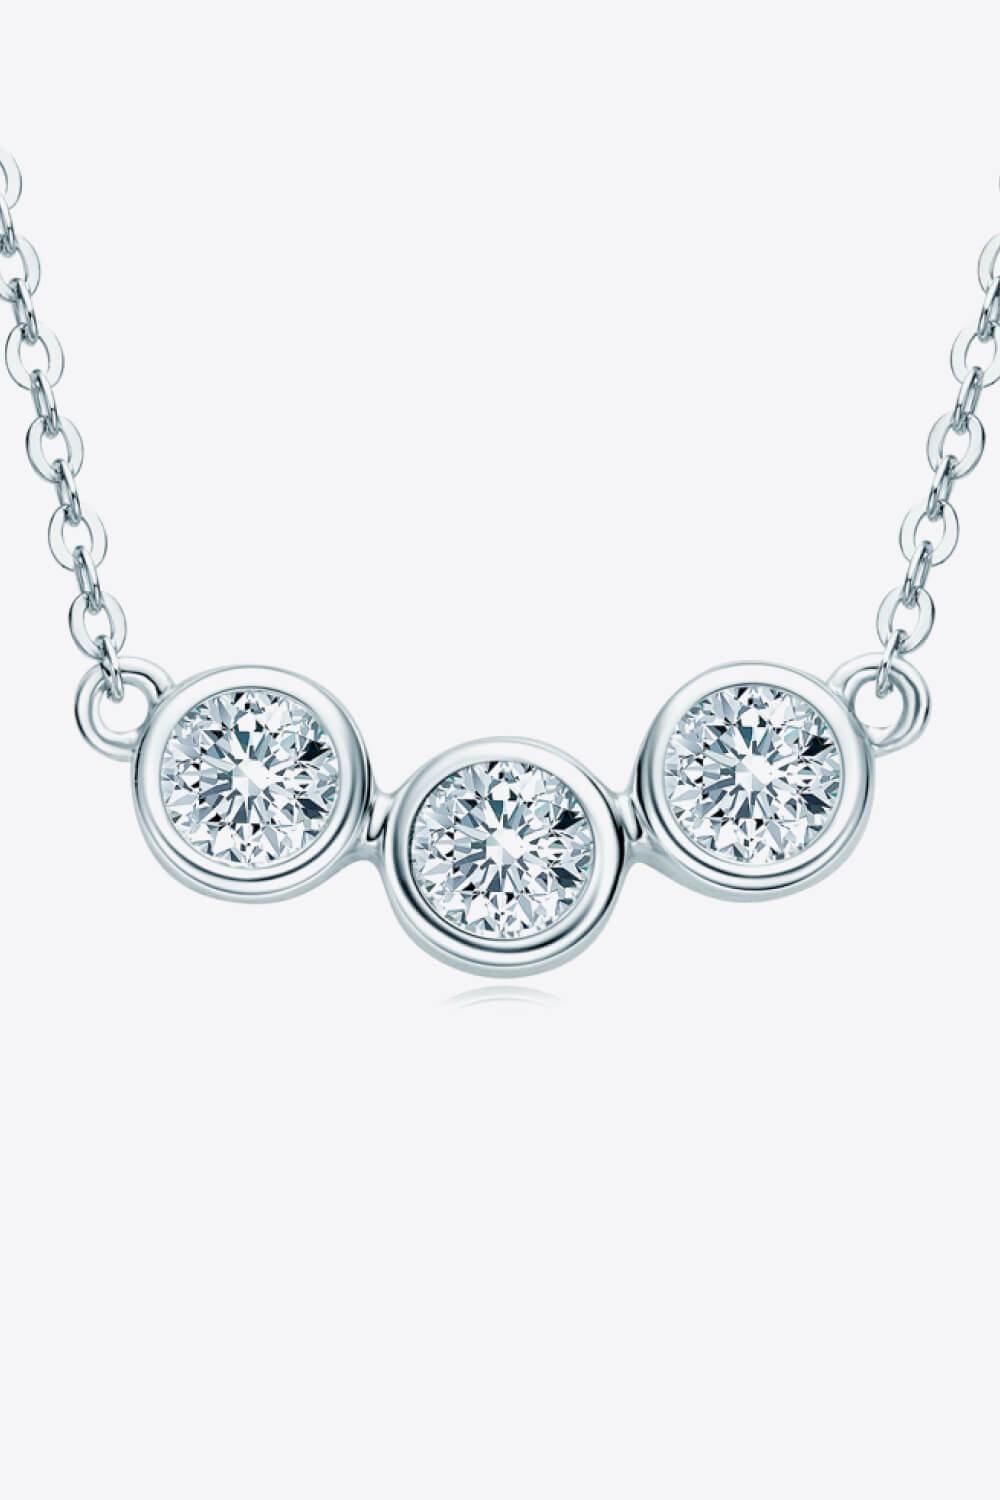 Find Your Center Moissanite Necklace - DromedarShop.com Online Boutique